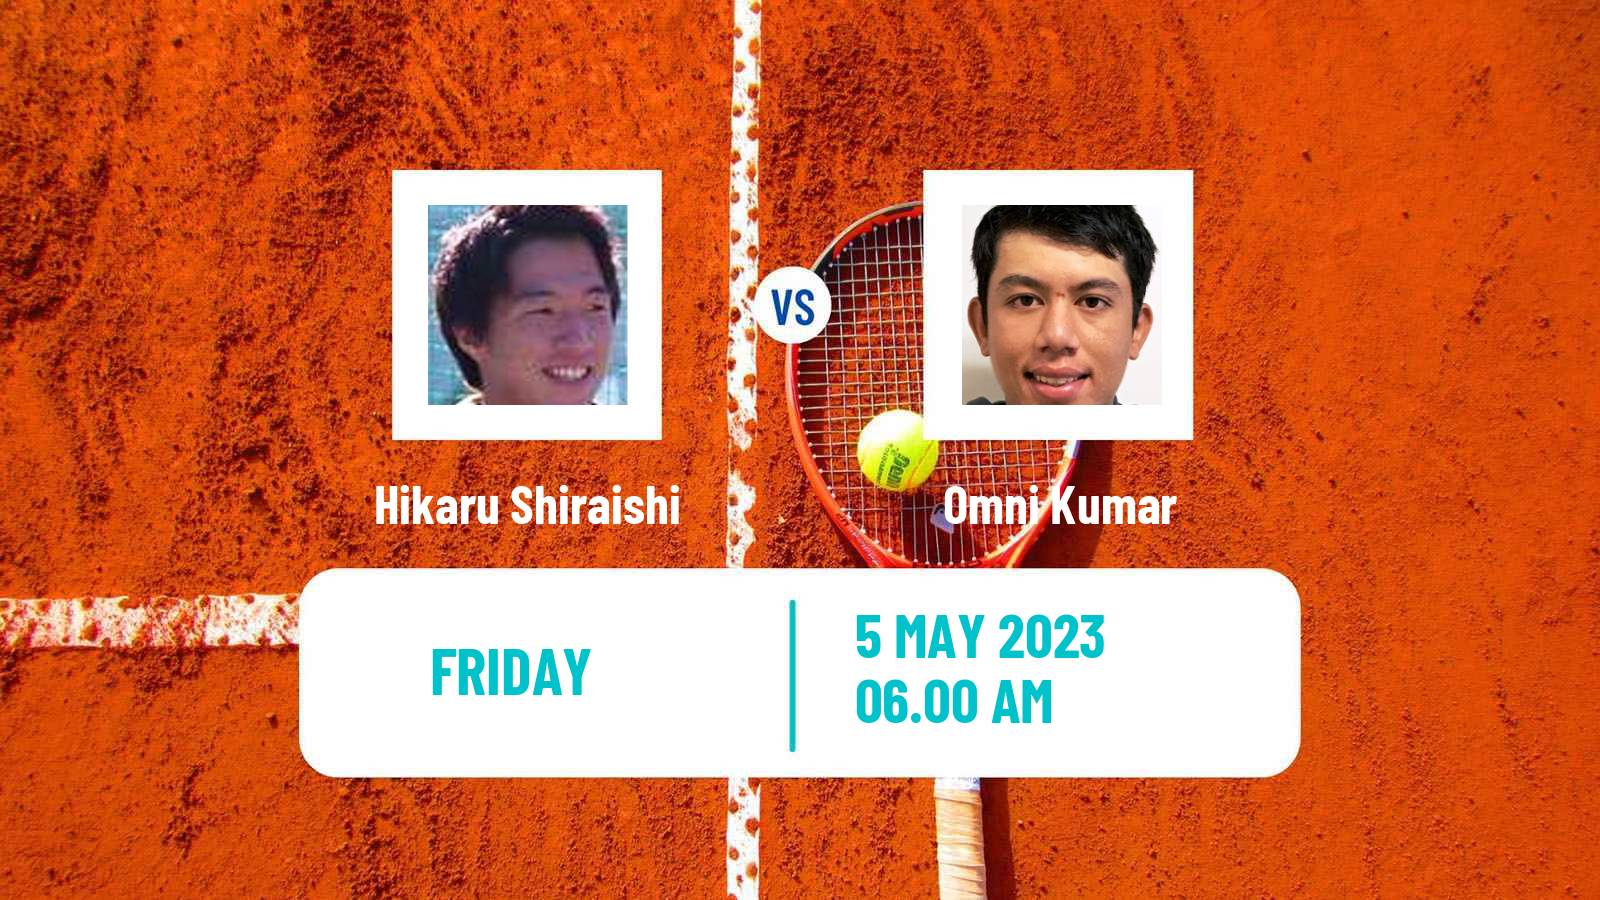 Tennis ITF Tournaments Hikaru Shiraishi - Omni Kumar